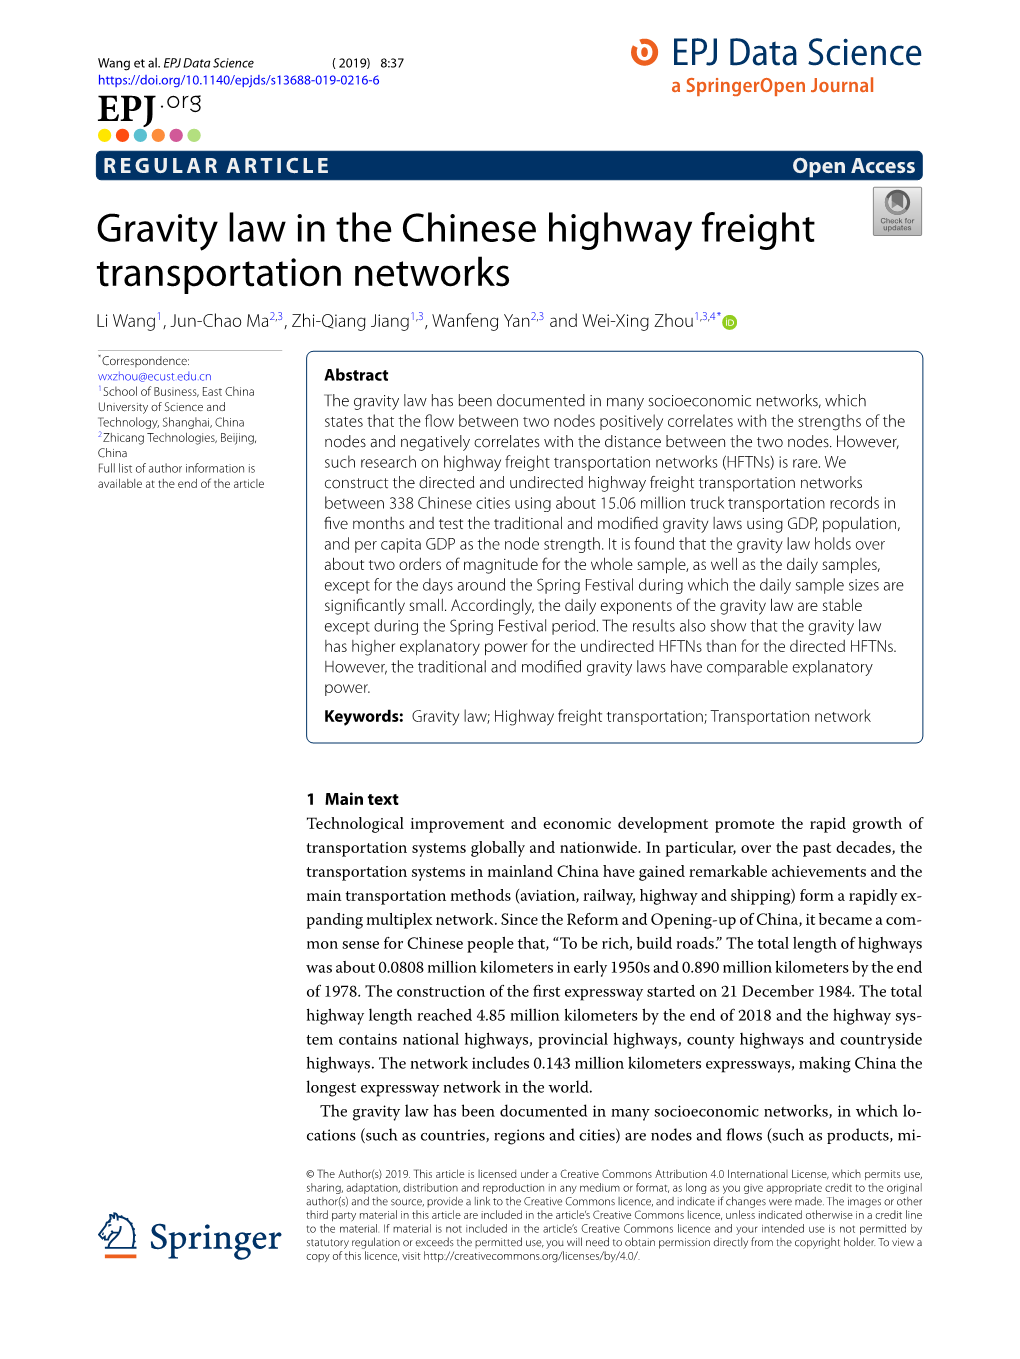 Gravity Law in the Chinese Highway Freight Transportation Networks Li Wang1, Jun-Chao Ma2,3, Zhi-Qiang Jiang1,3, Wanfeng Yan2,3 and Wei-Xing Zhou1,3,4*